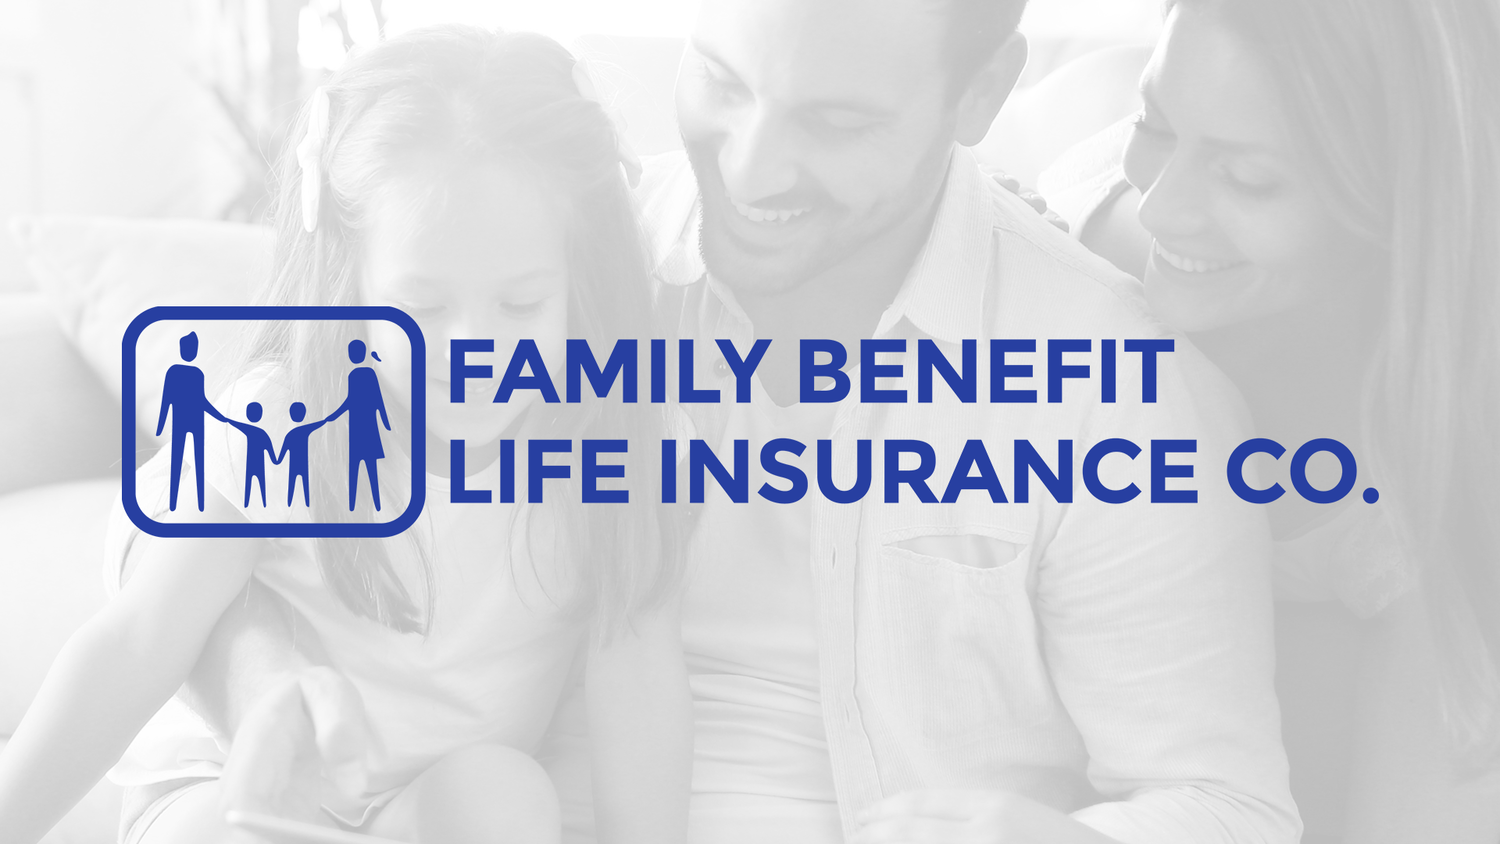 Family Benefit Life Insurance Company